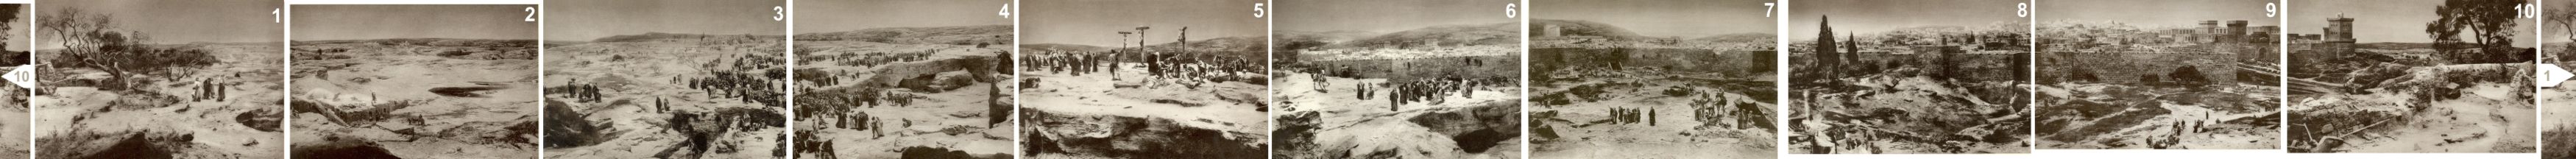 Das Jerusalem-Rundgemälde (Panorama), zusammengesetzt aus 10 Einzelfotos.